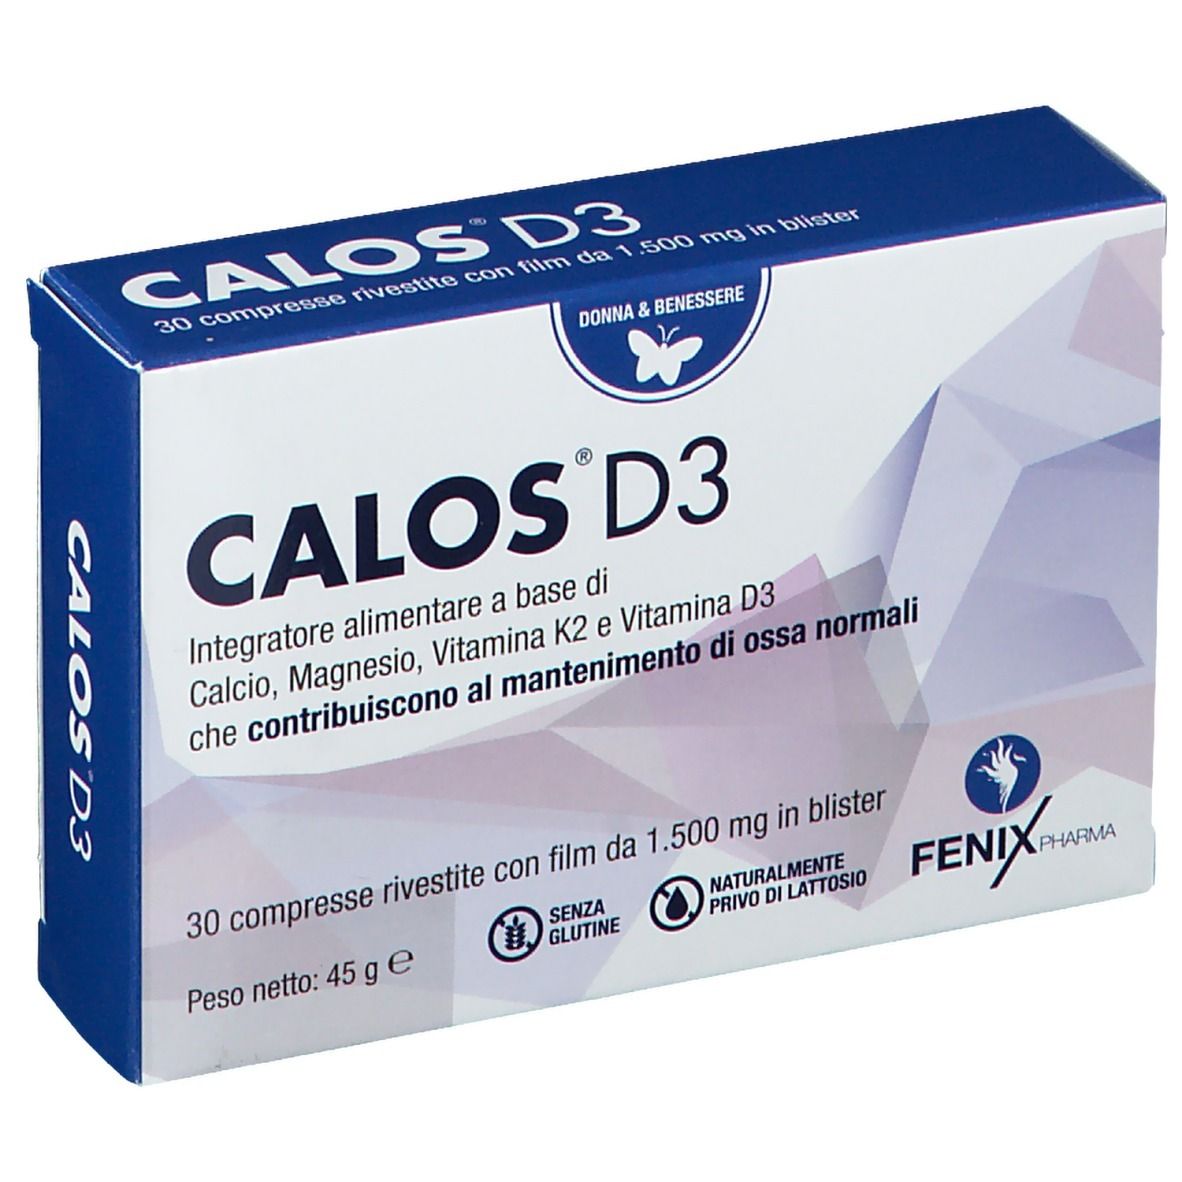 Calos® D3